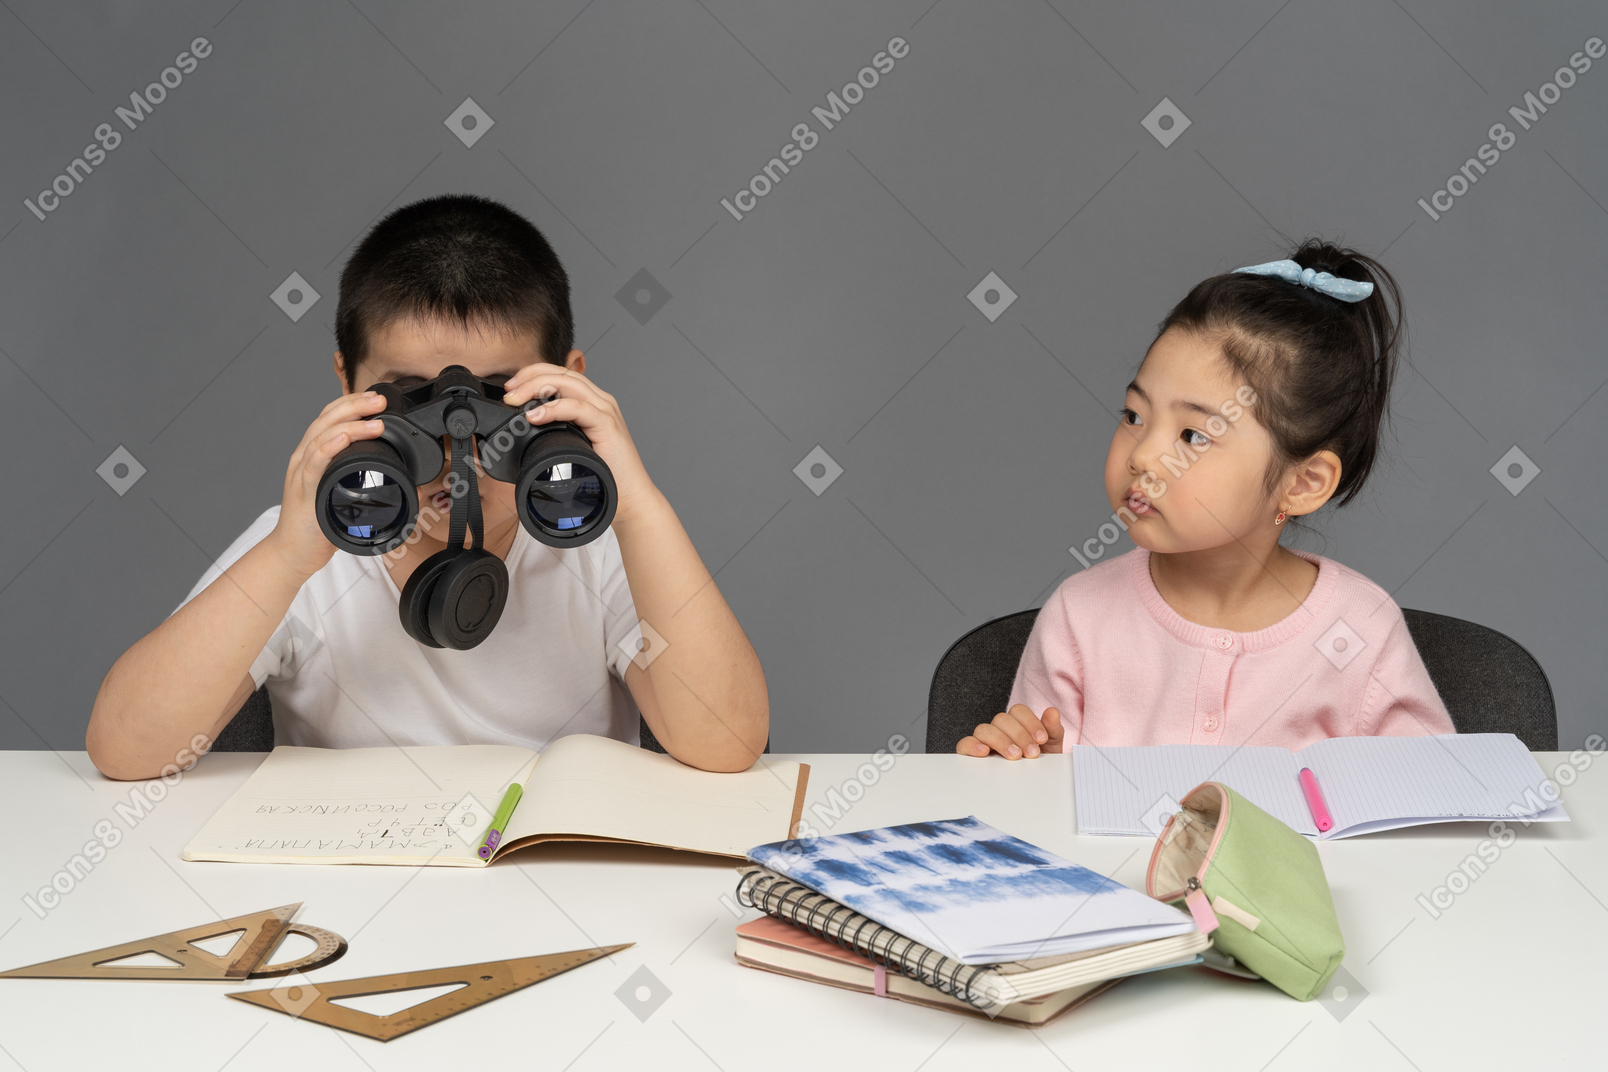 Chico mirando a través de binoculares junto a chica